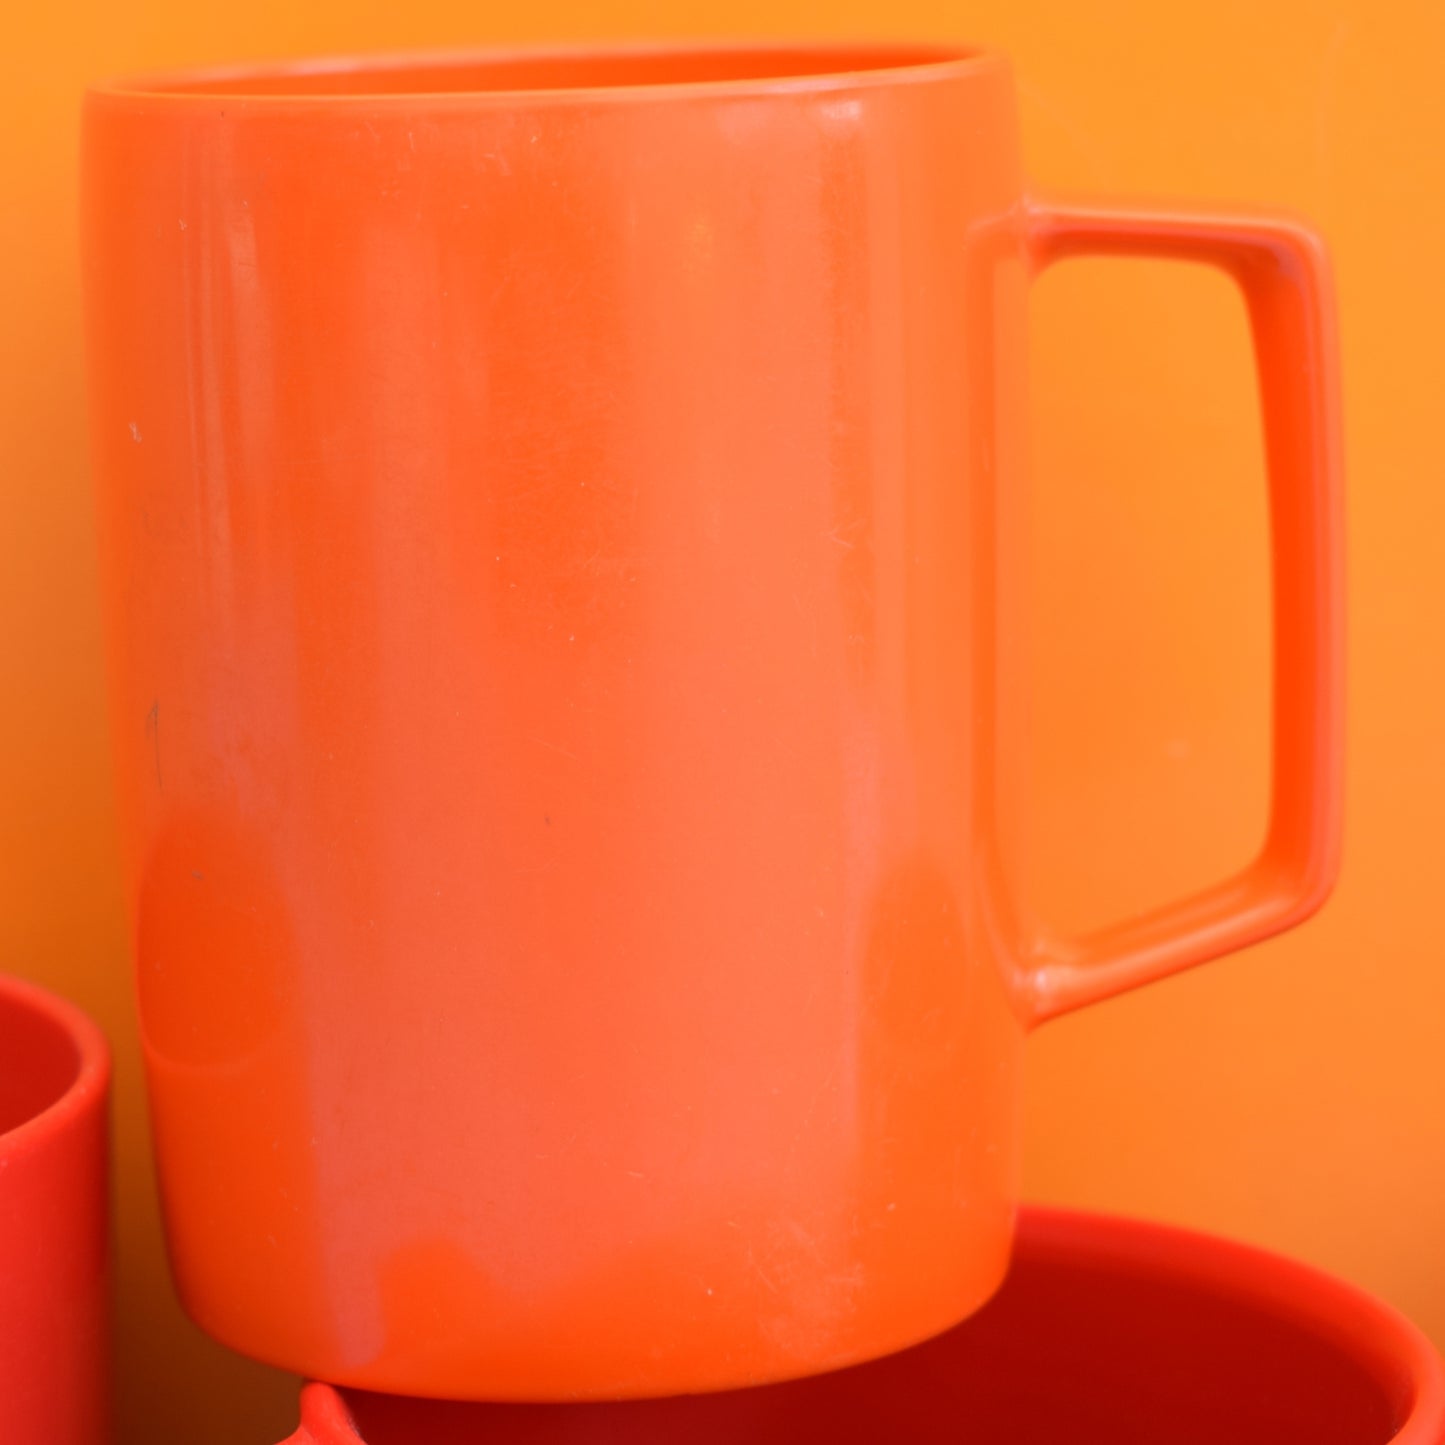 Vintage 1970s Plastic Mugs - Red / Orange